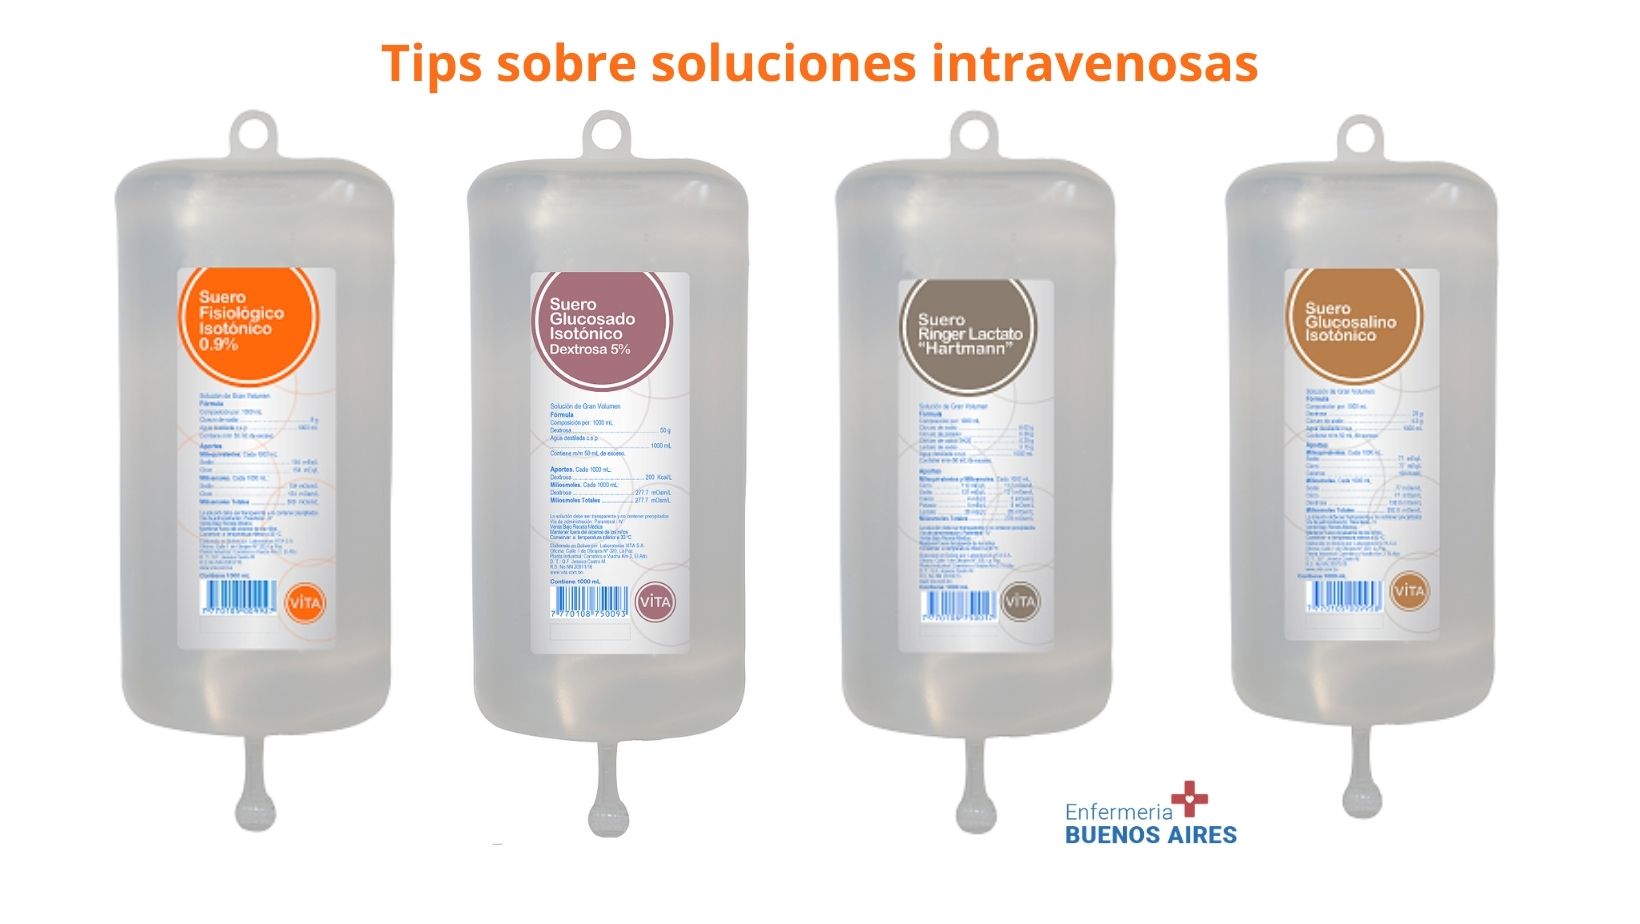 Tips sobre soluciones intravenosas